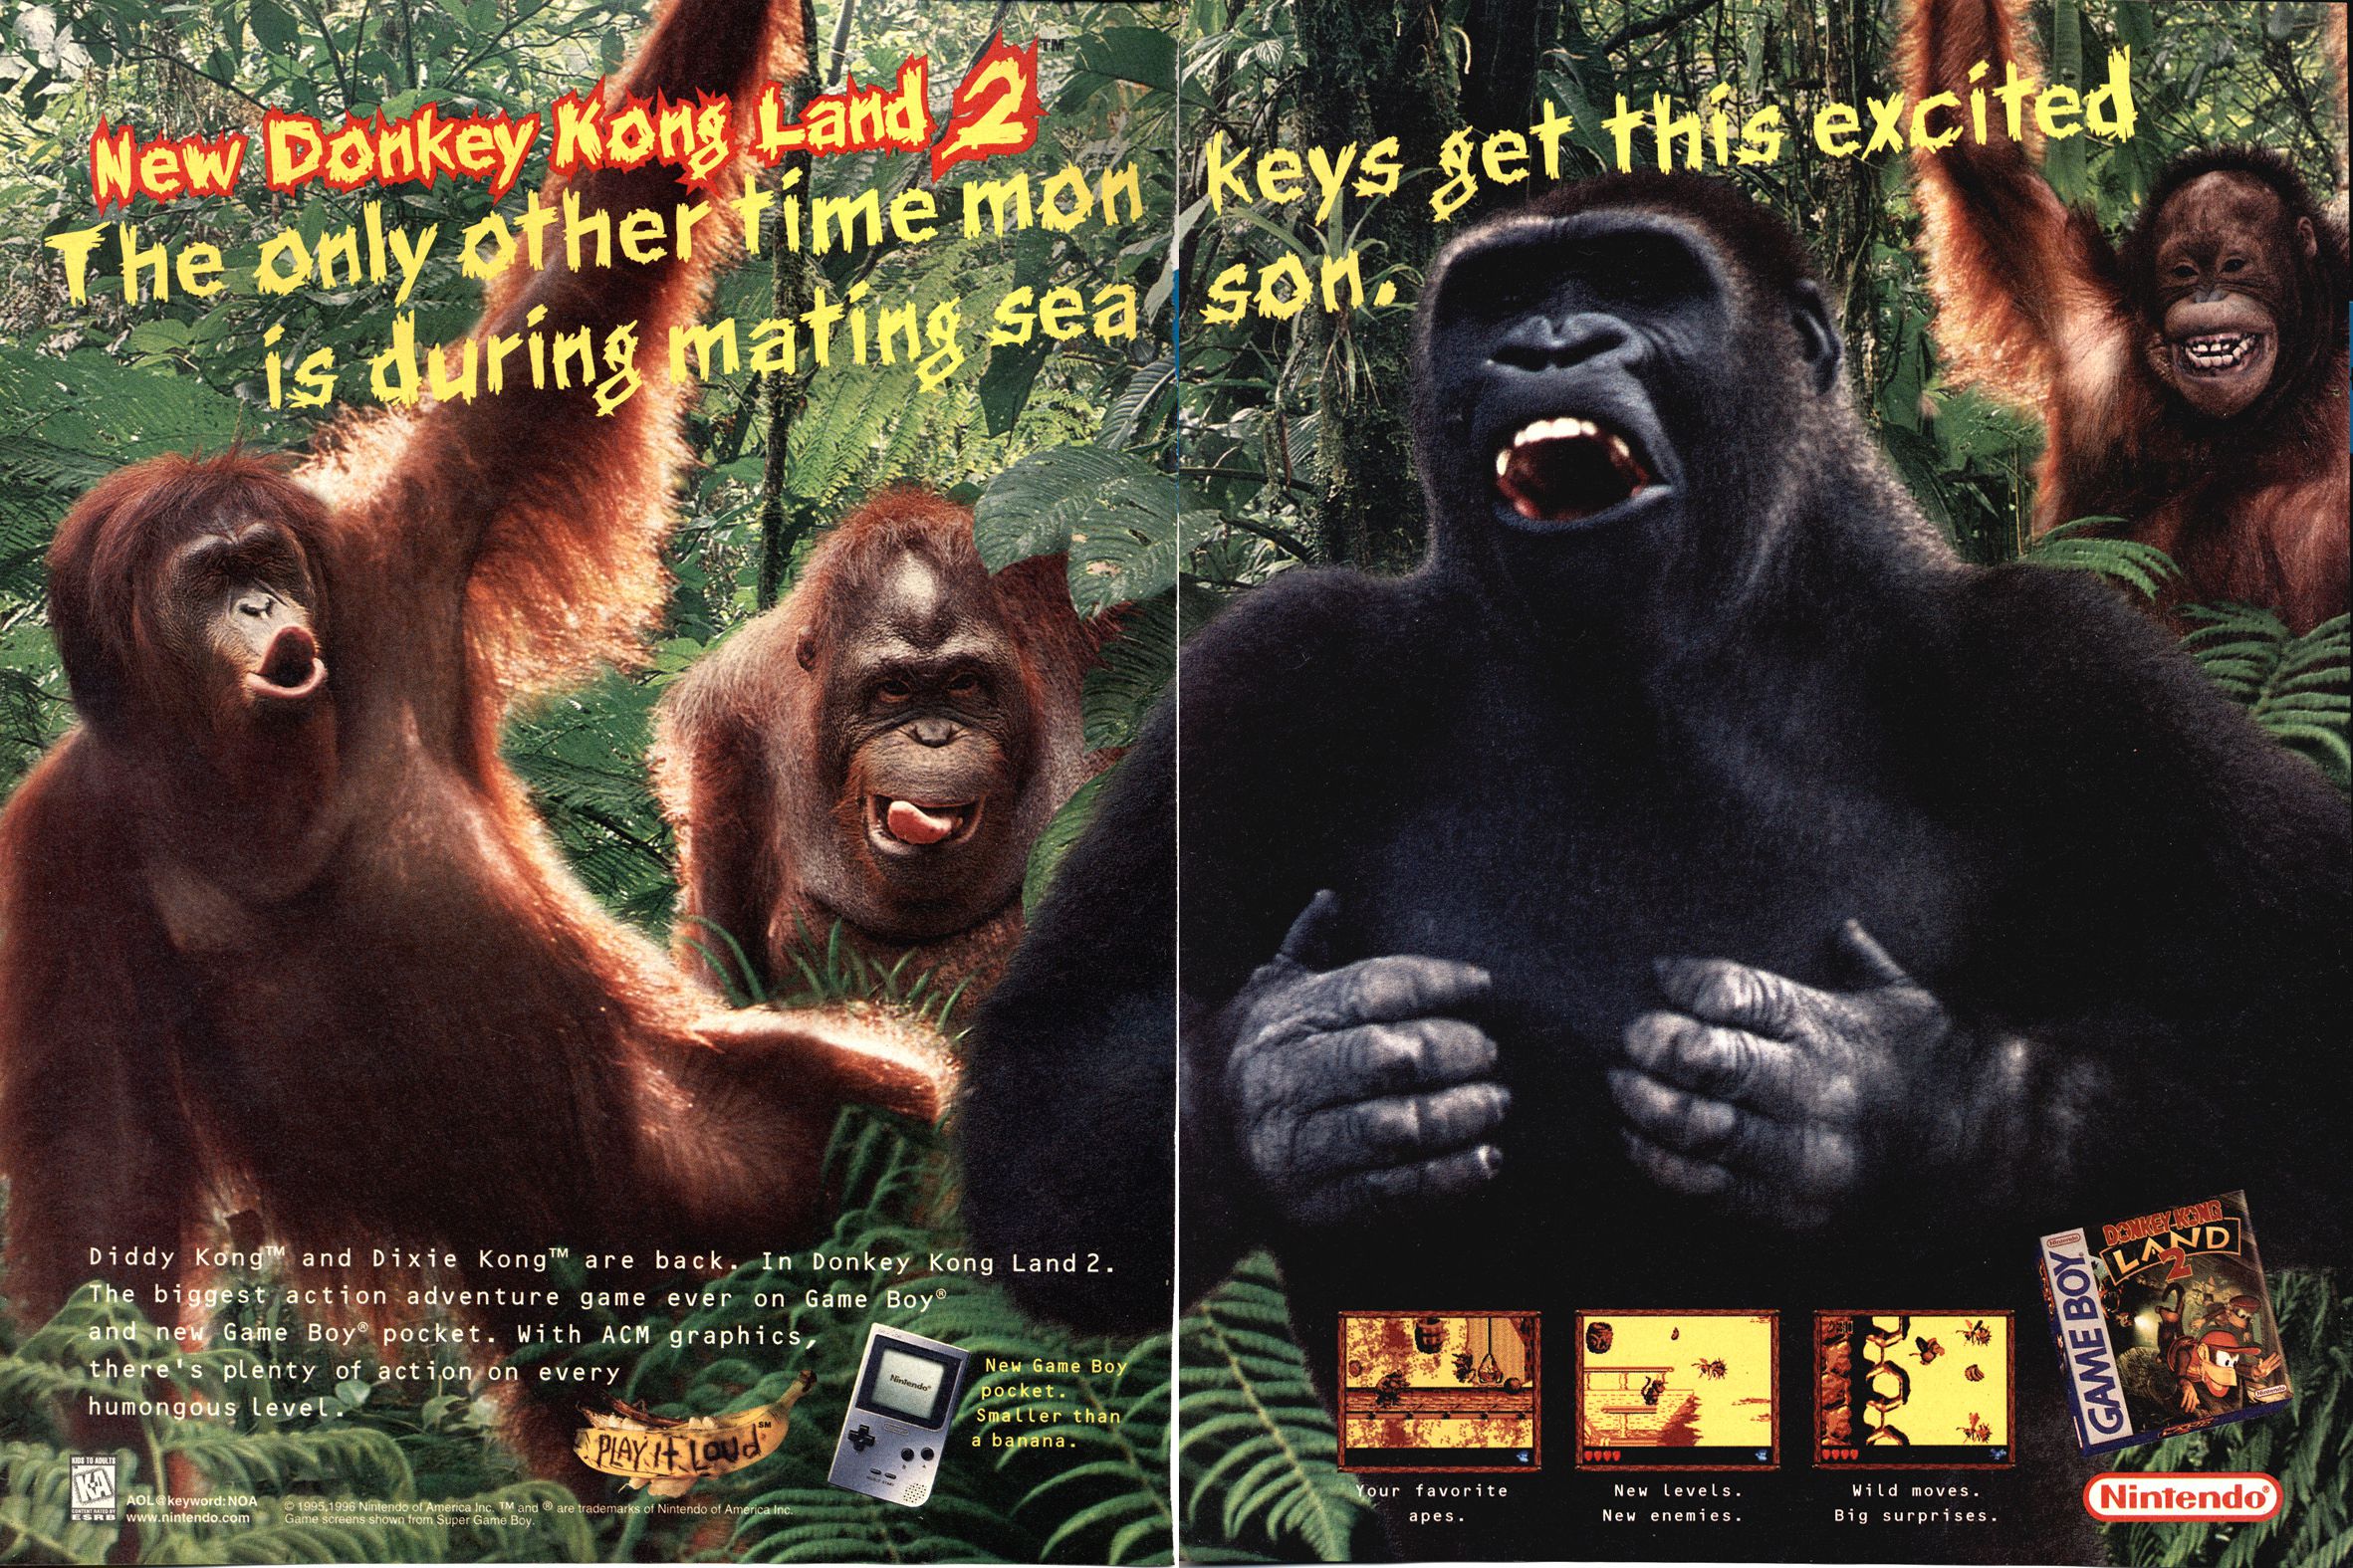 Donkey-Kong-Land-2_print_ad.jpeg